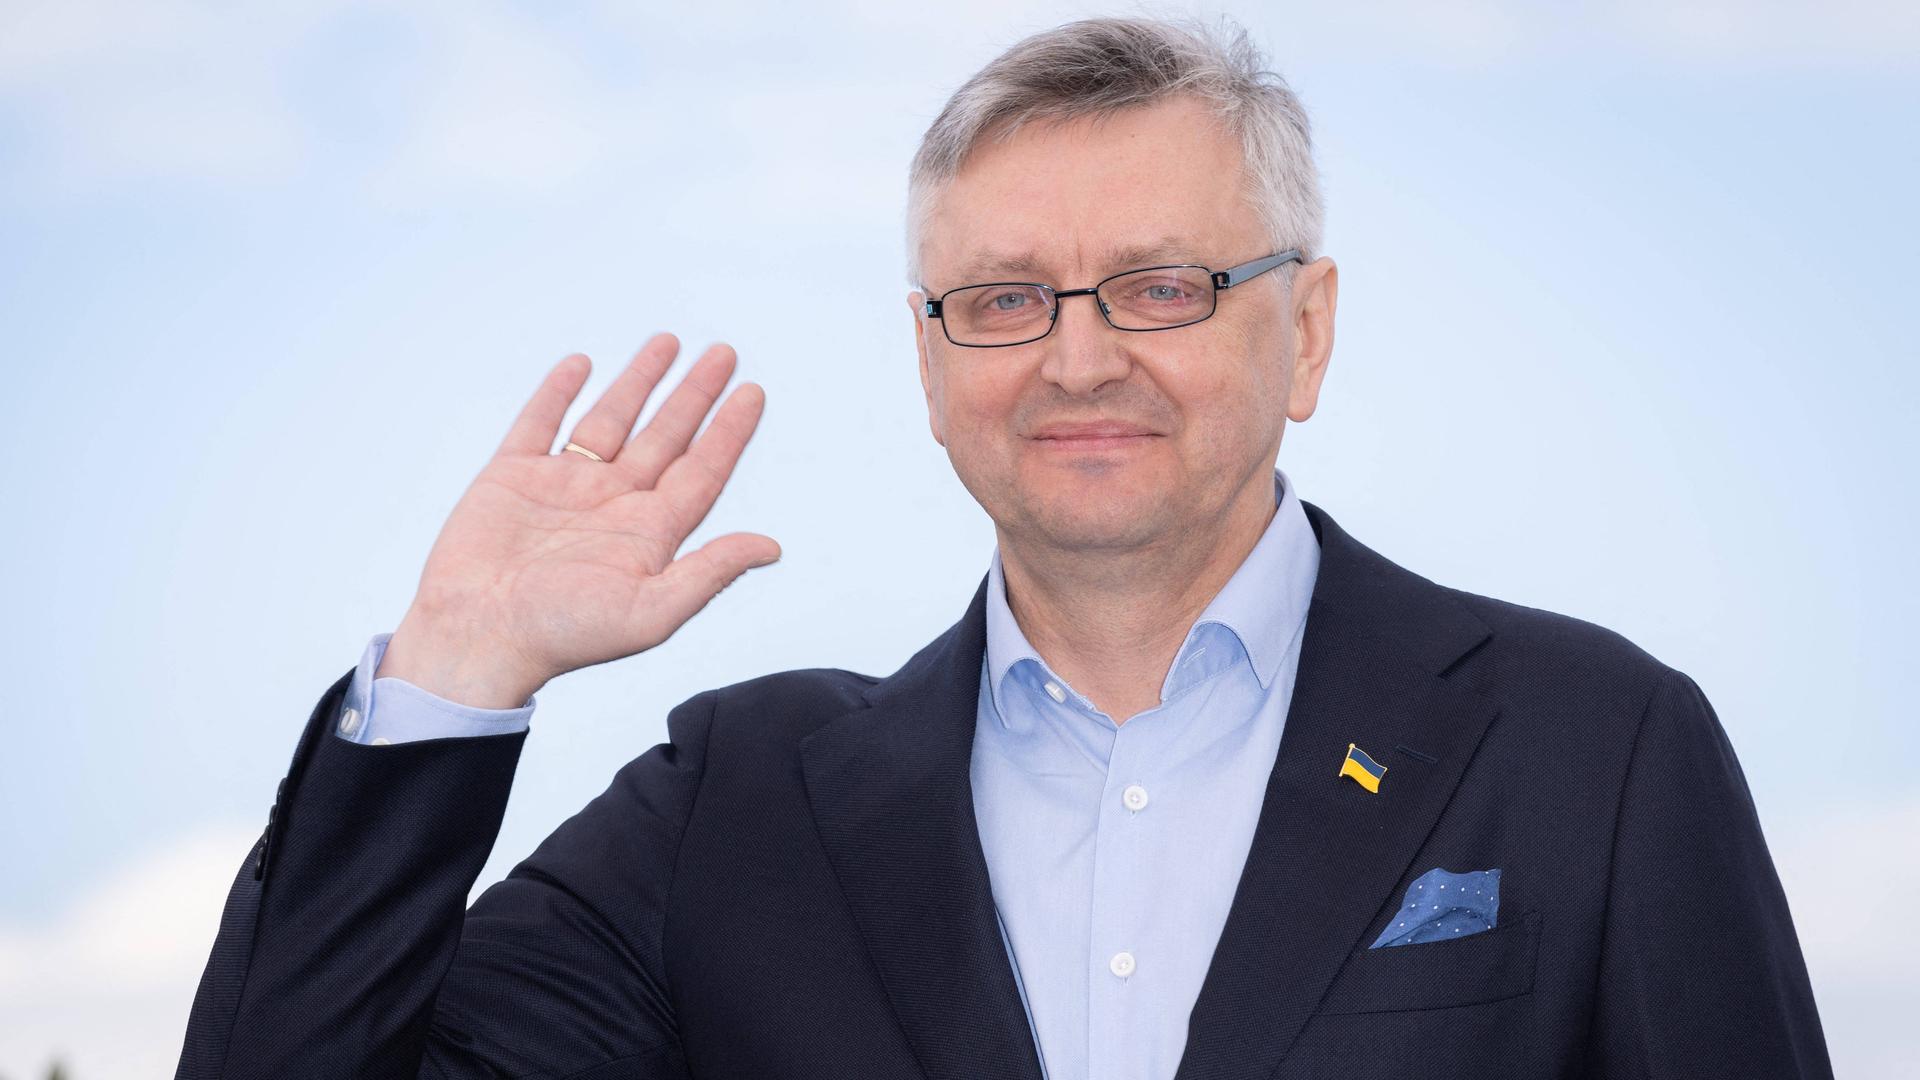 Der ukrainische Regissuer Sergei Loznitsa grüßt mit erhobener Hand beim Filmfestival in Cannes